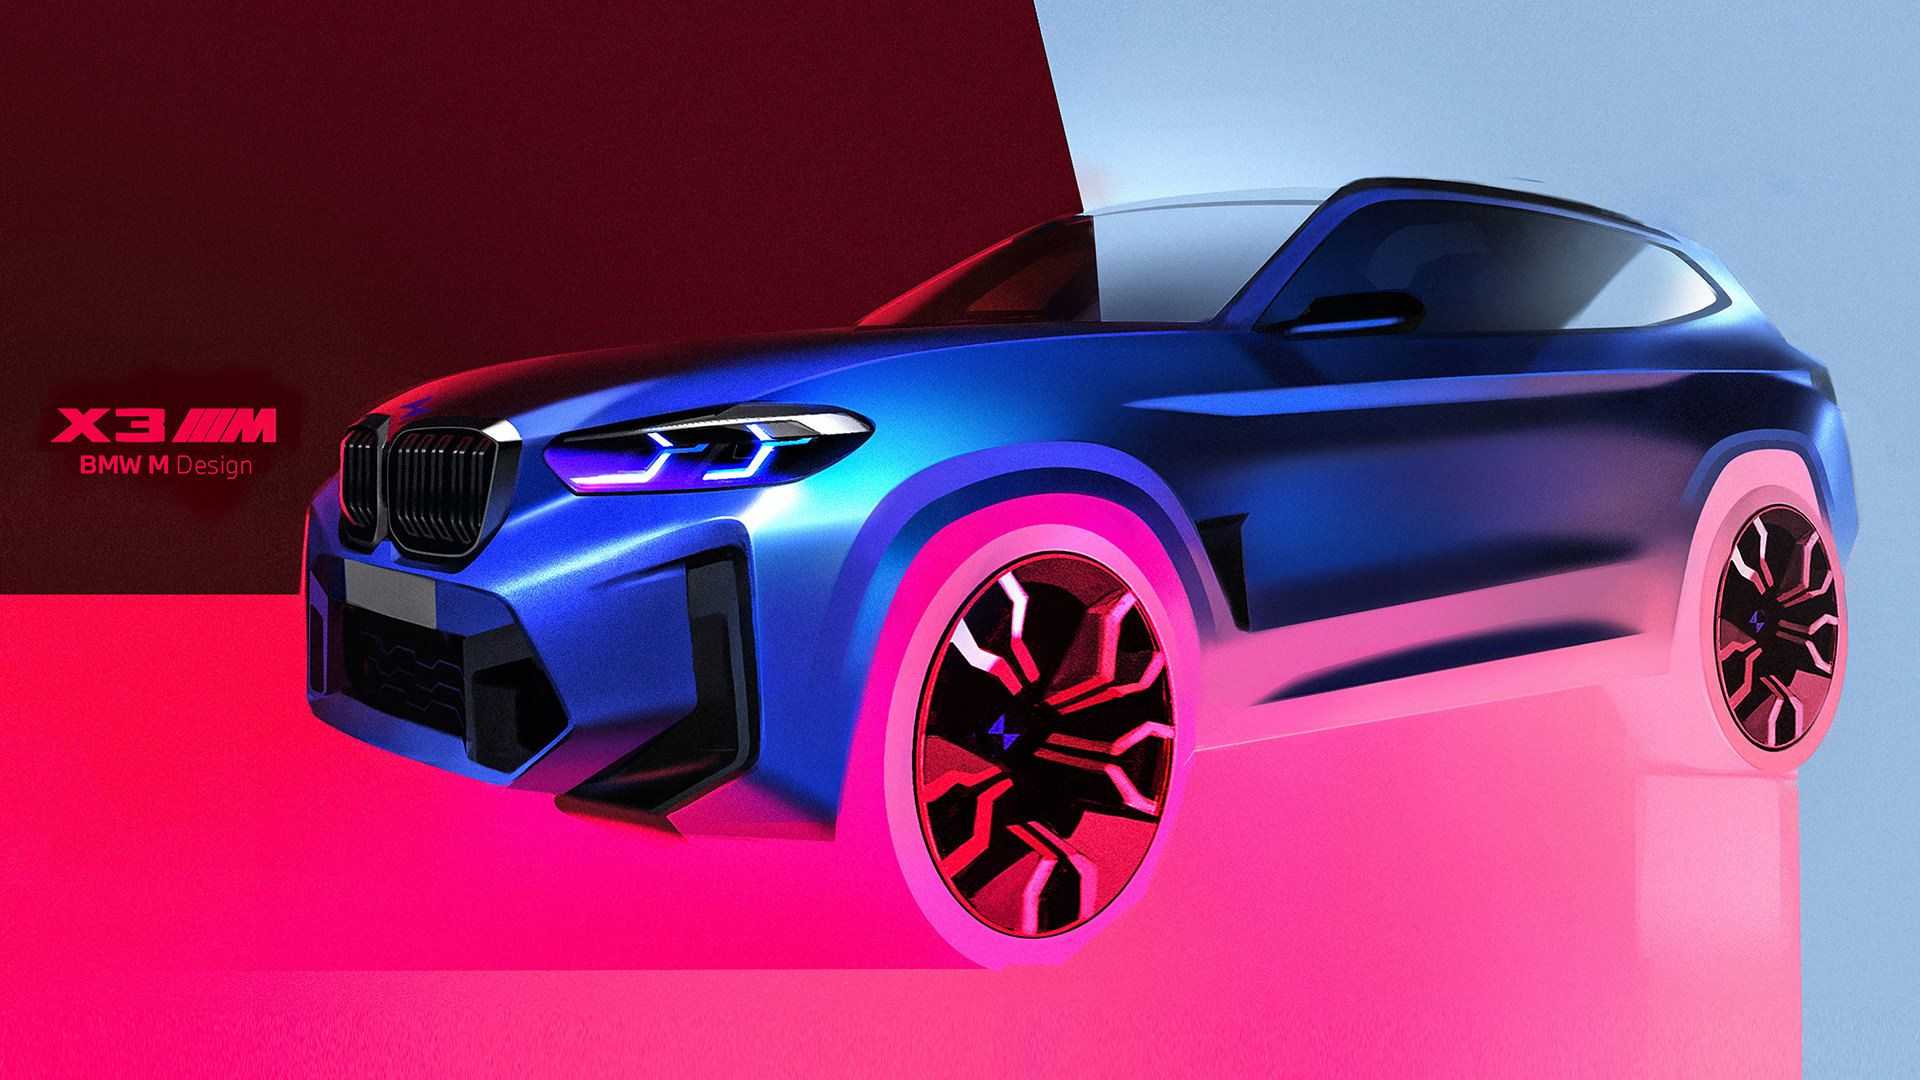 Yeni BMW X3 M konsept